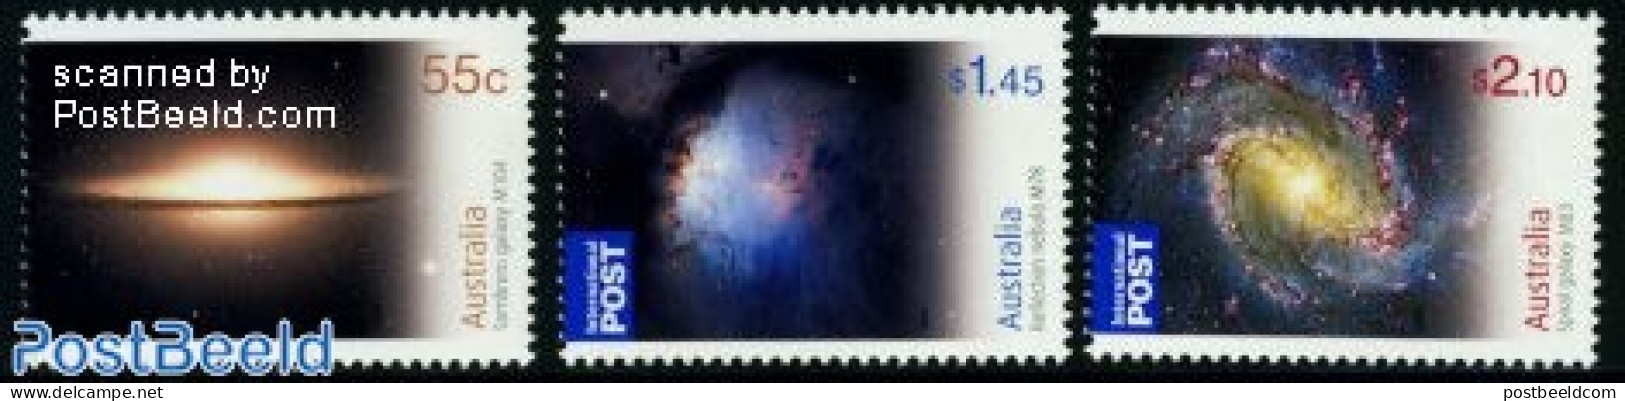 Australia 2009 Astronomy 3v, Mint NH, Science - Astronomy - Ongebruikt